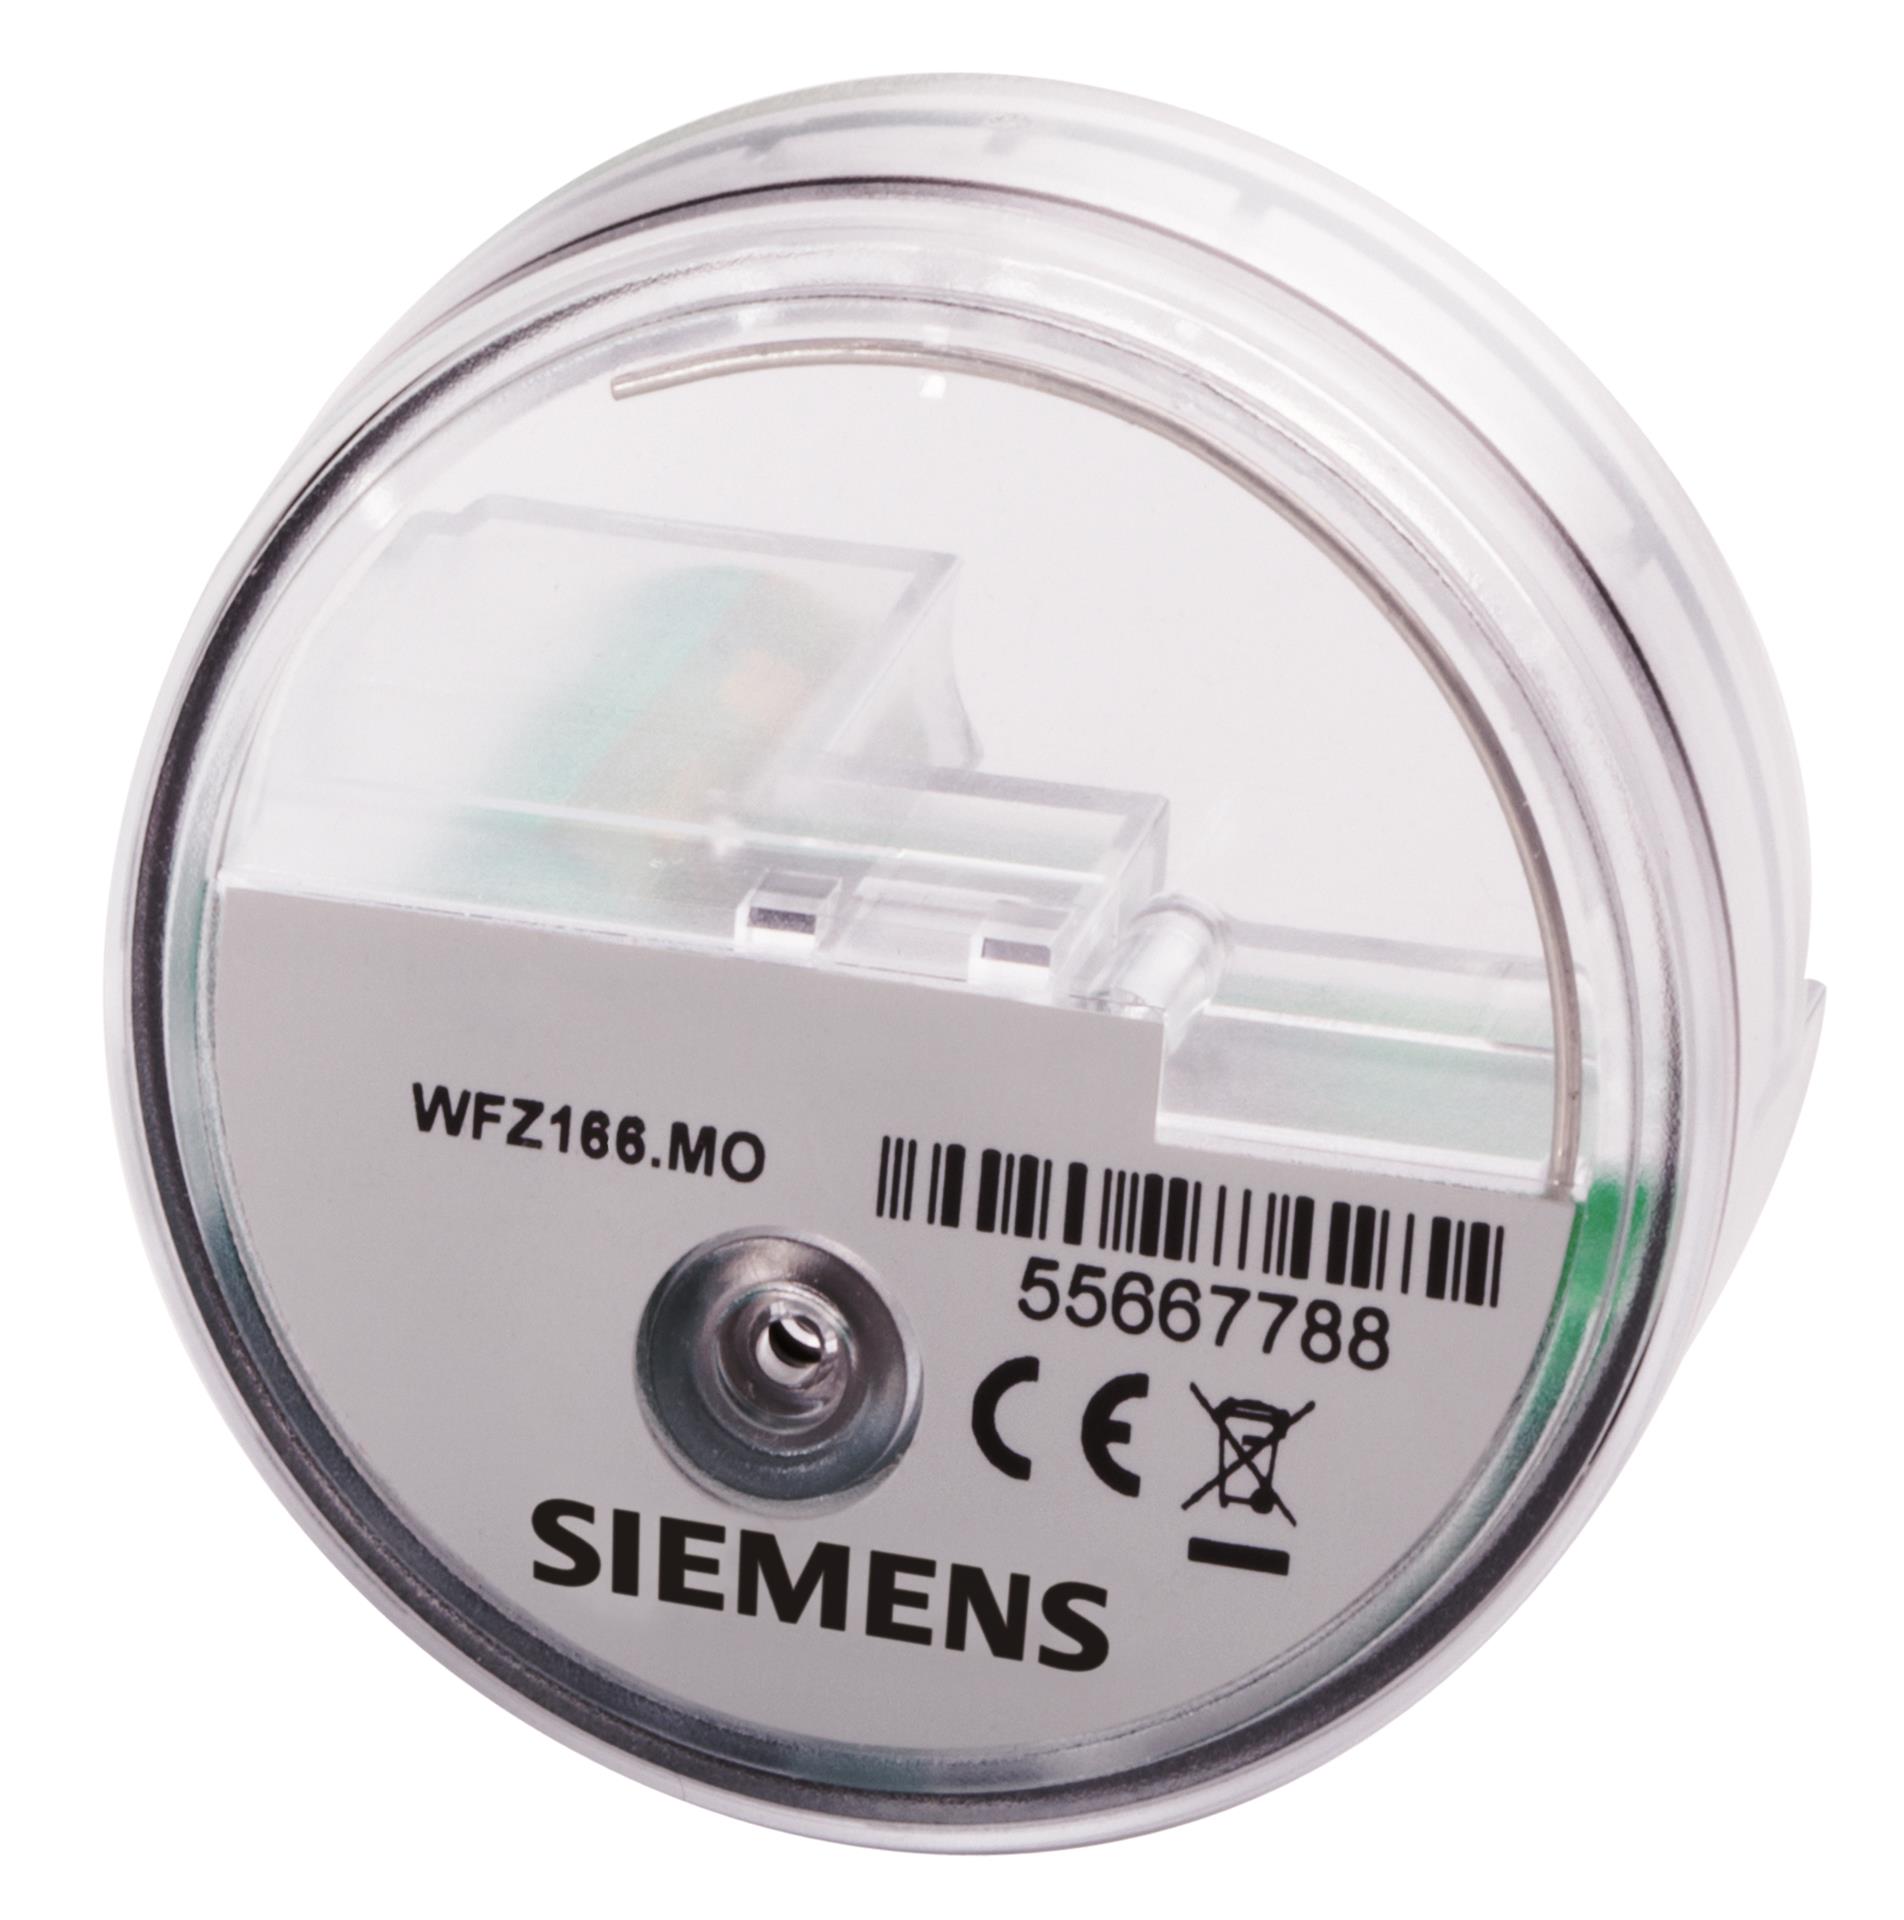 WFZ166.MO | S55563-F101 SIEMENS Механические и электронные водосчётчики - Siemeca™ цена, купить